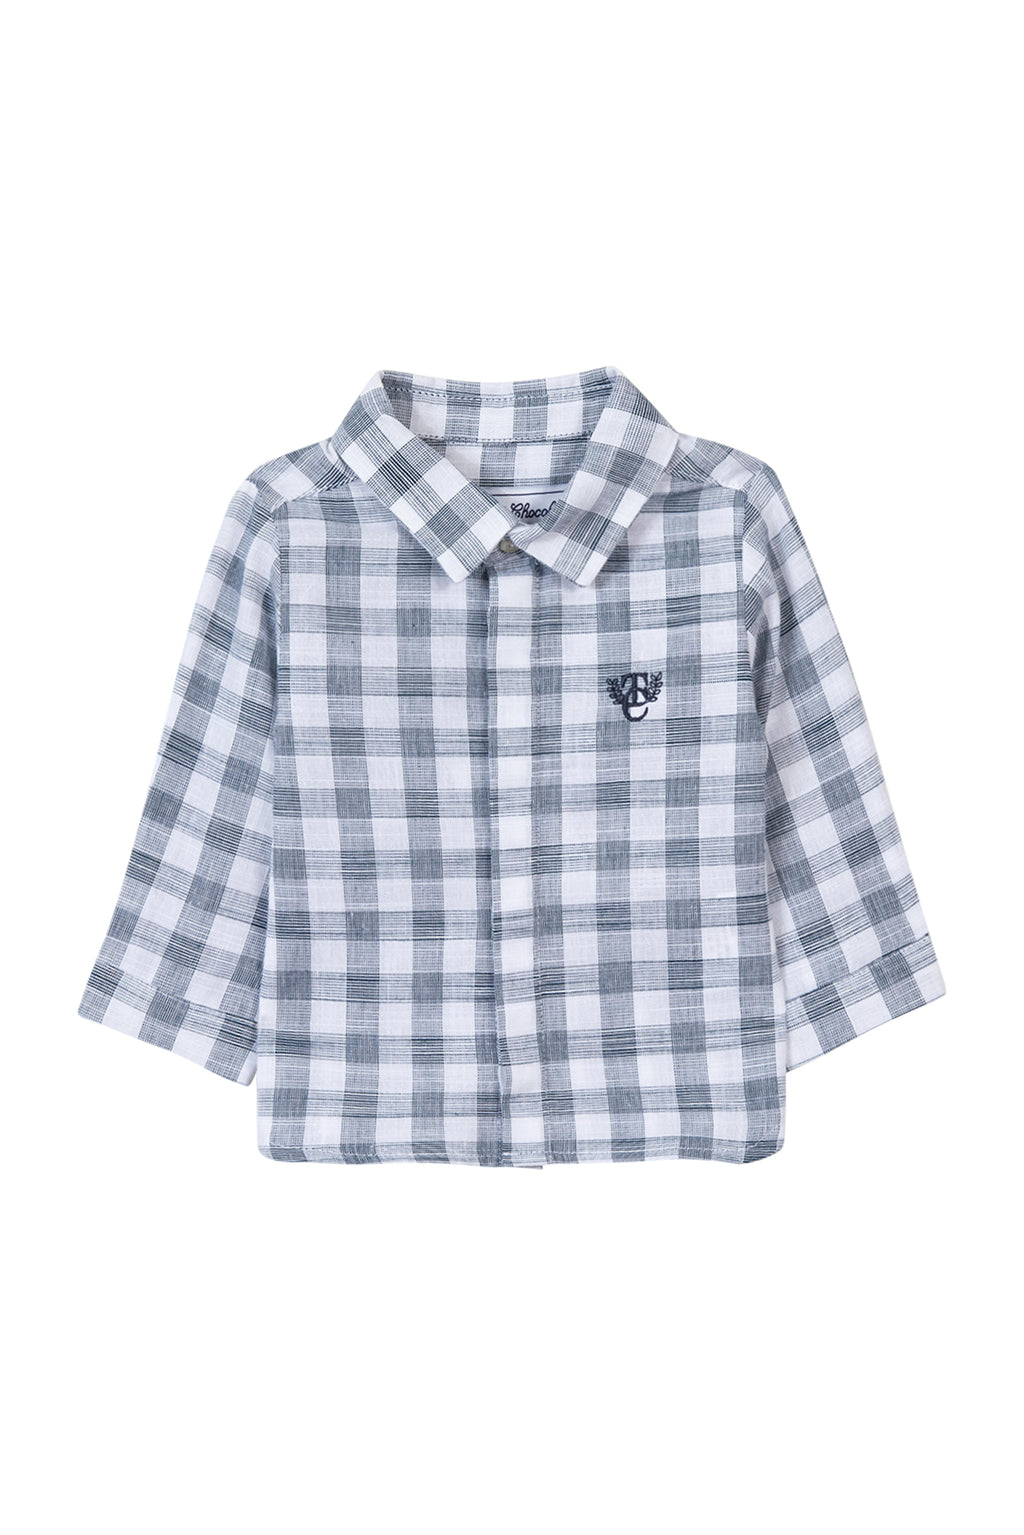 Shirt - Check two -color